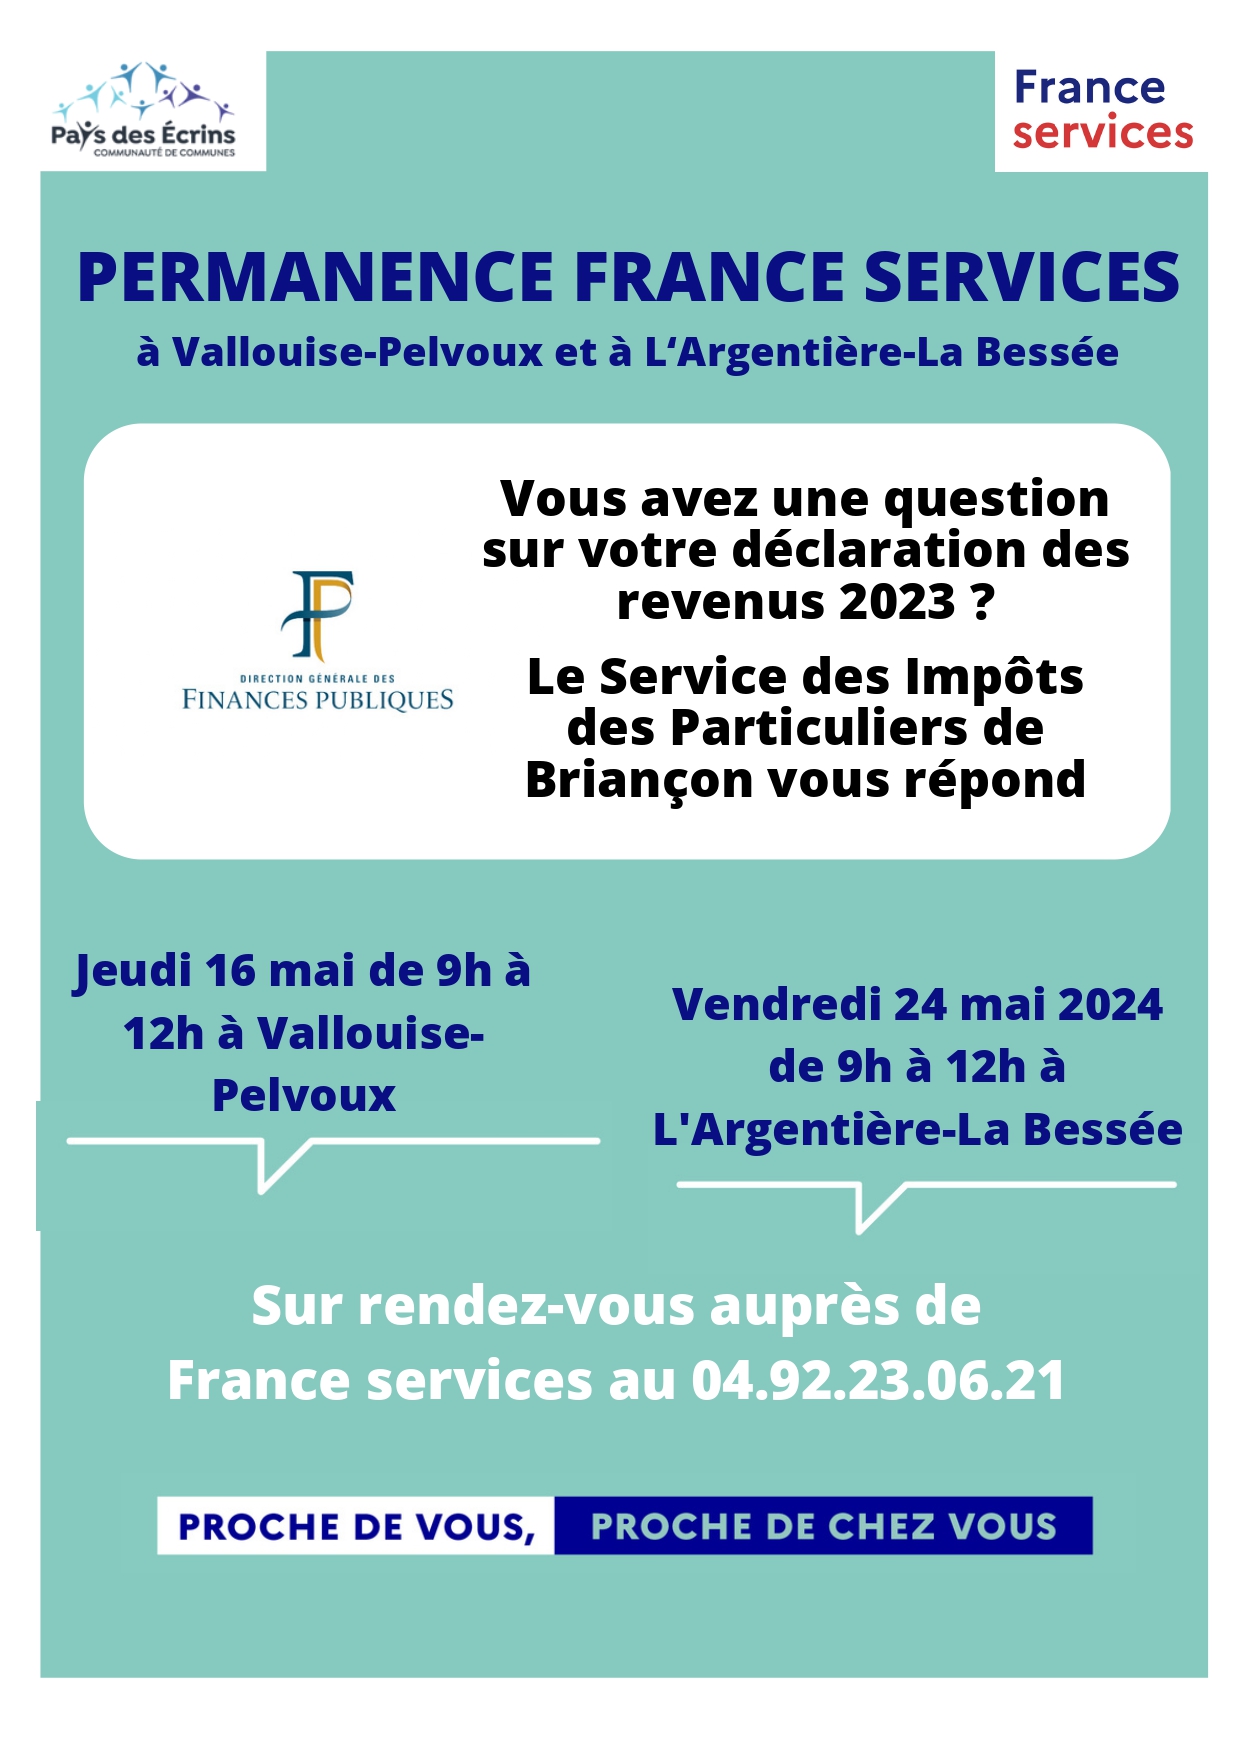 Permanence du service des impôts à France services